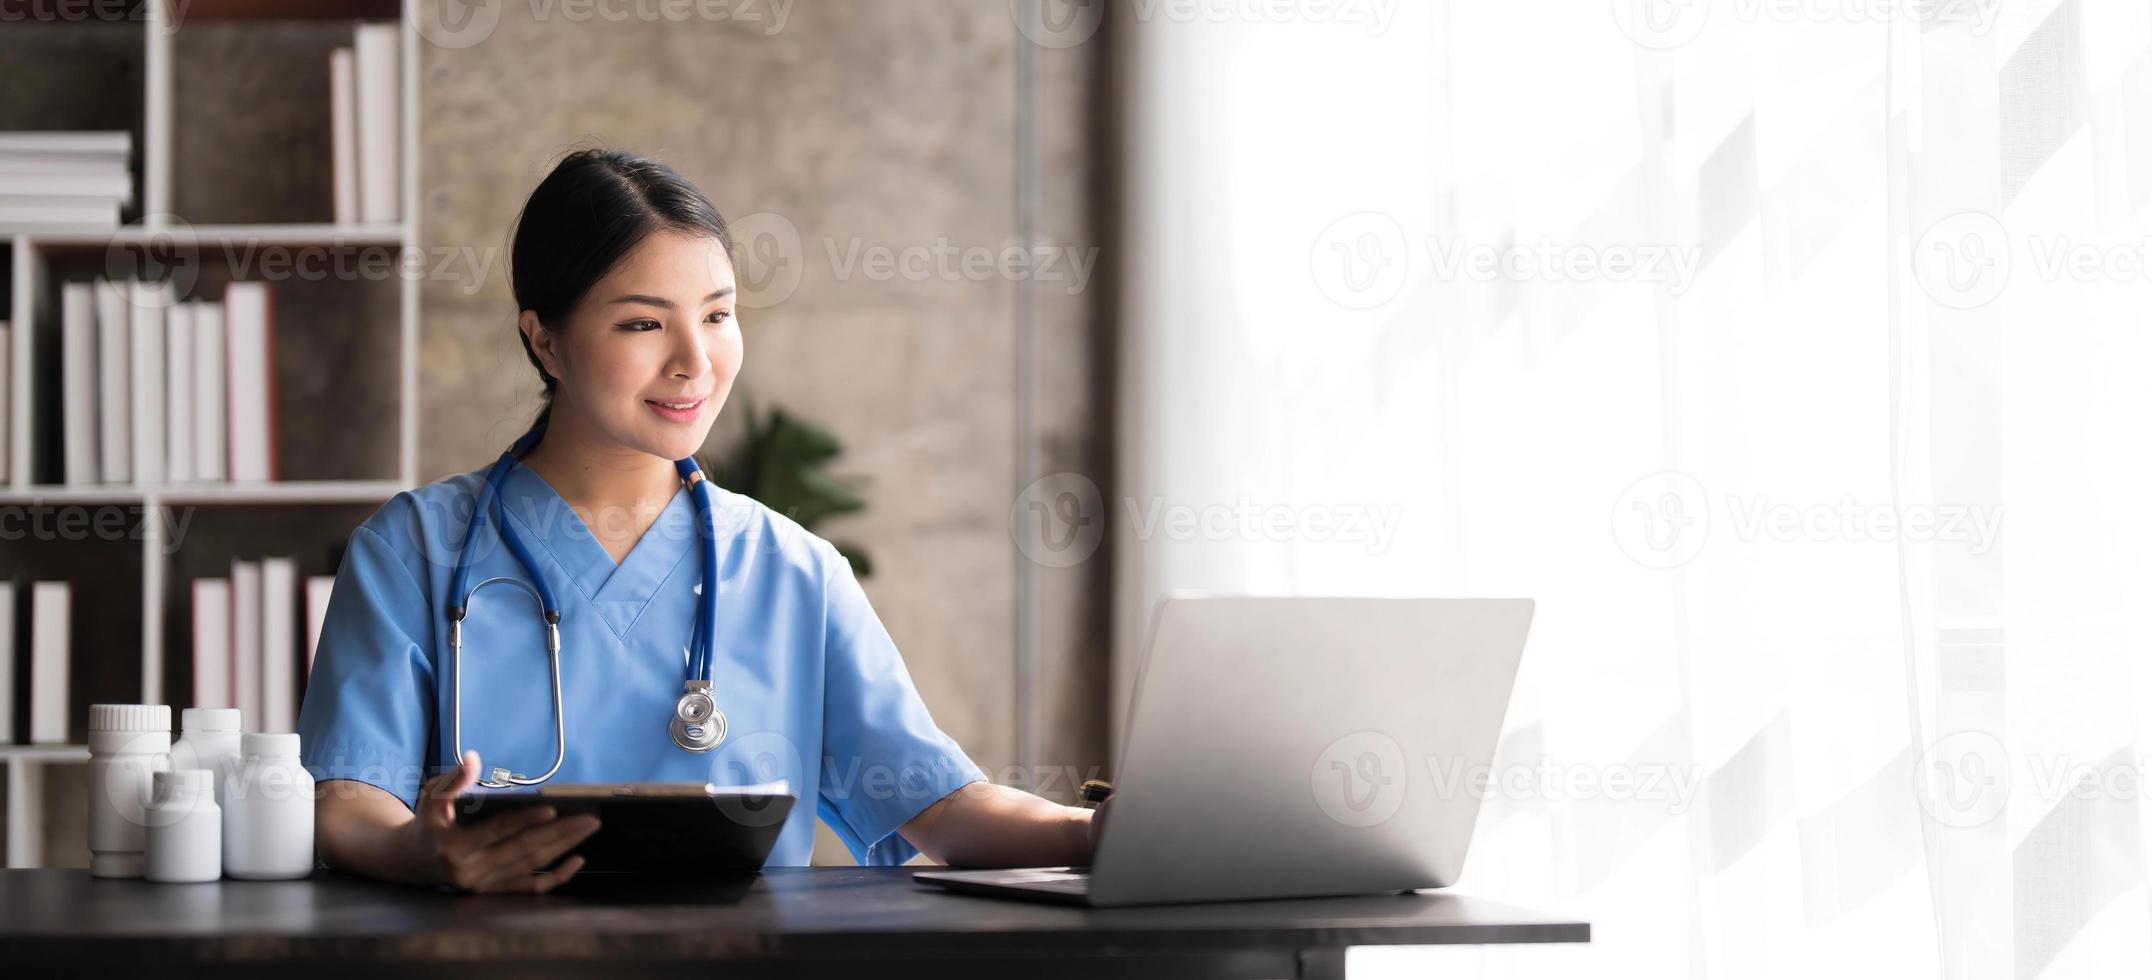 asiatisk läkare ung skön kvinna leende använder sig av arbetssätt med en bärbar dator dator och henne skrivning något på pappersarbete eller Urklipp vit papper på sjukhus skrivbord kontor, sjukvård medicinsk begrepp foto